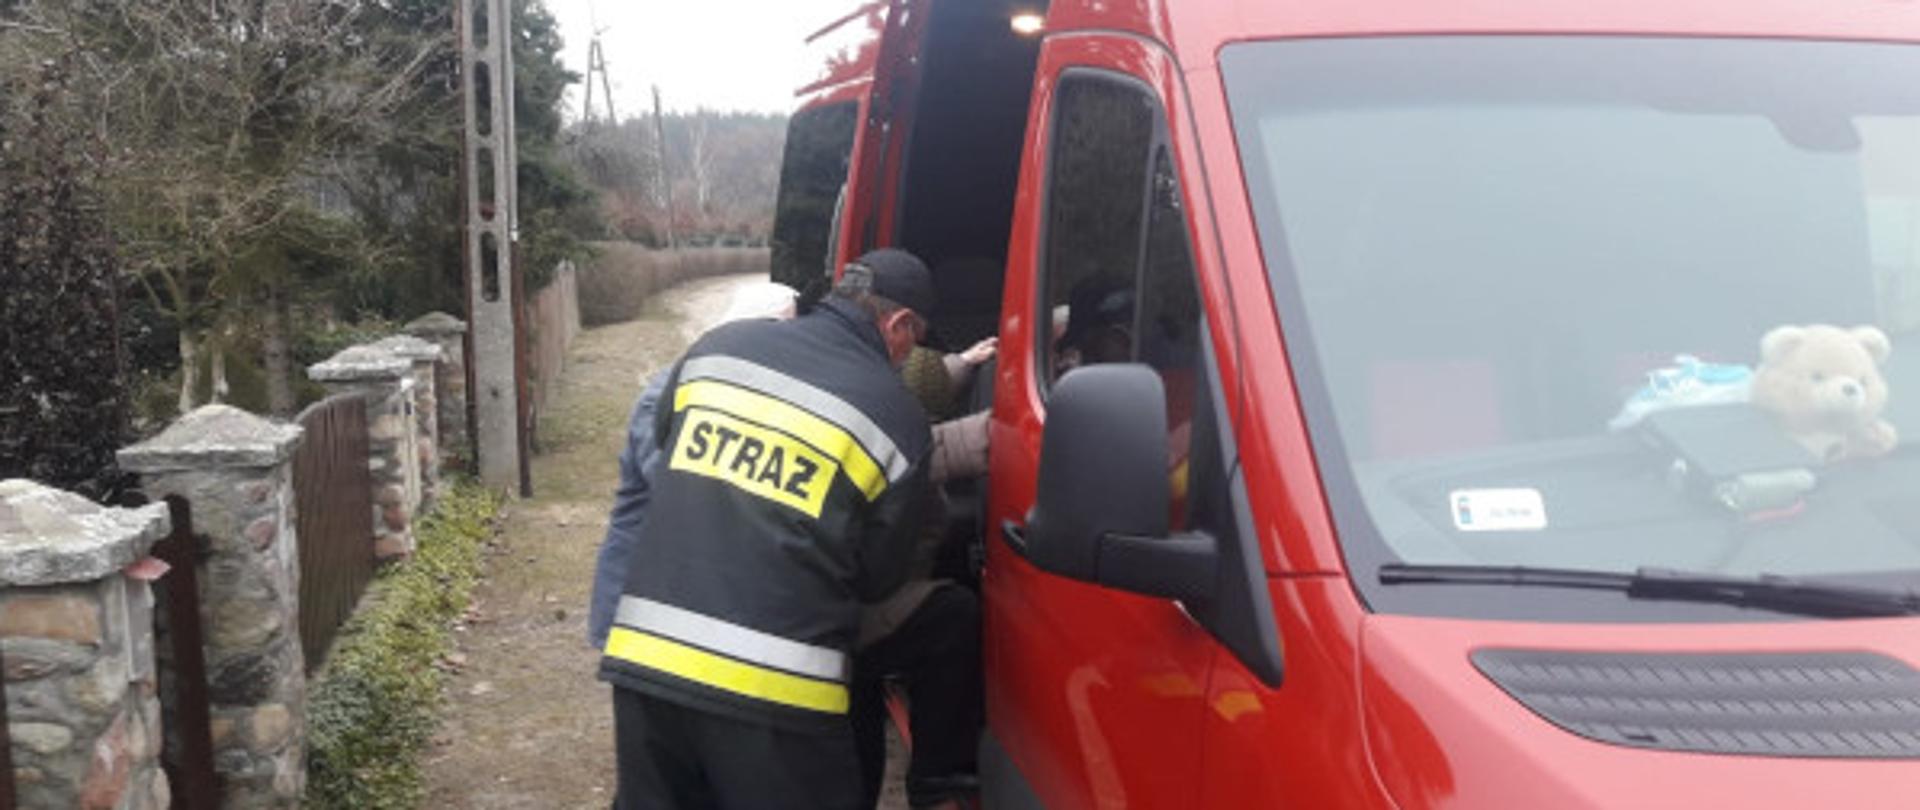 Strażacy z jednostki OSP Łubowo, po raz kolejny pomagali dotrzeć do punktu szczepień seniorom potrzebującym pomocy w poruszaniu się.